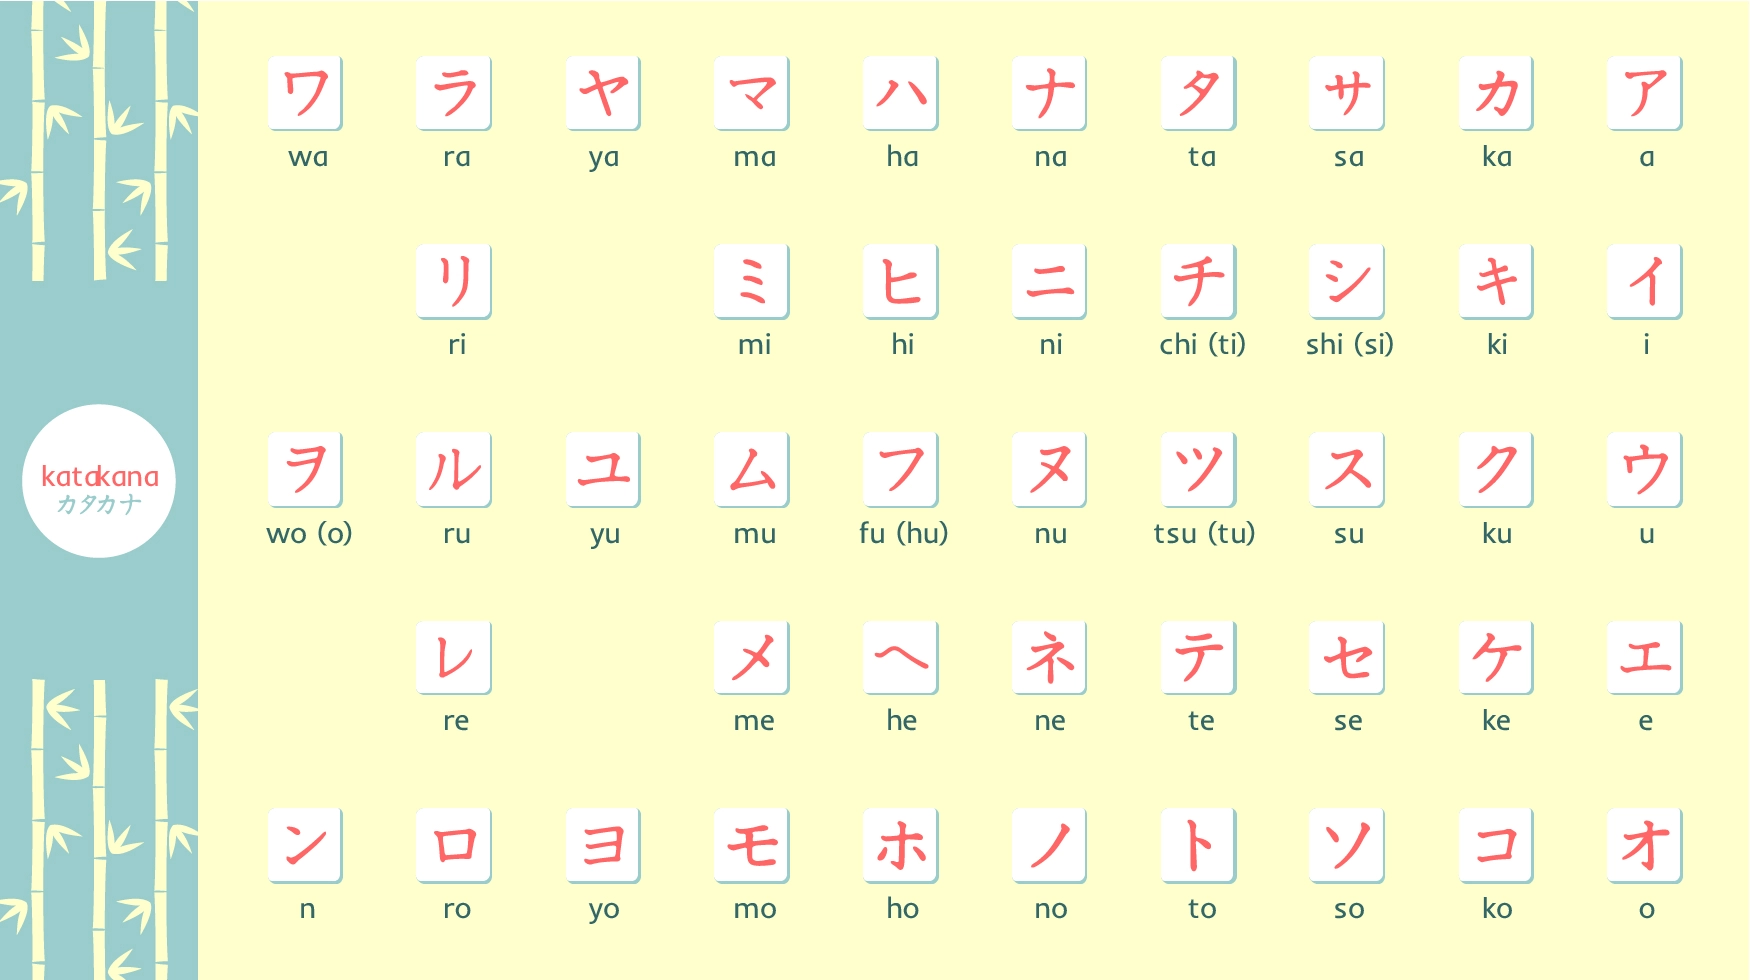 Bảng học chữ cái Katakana đẹp nhất